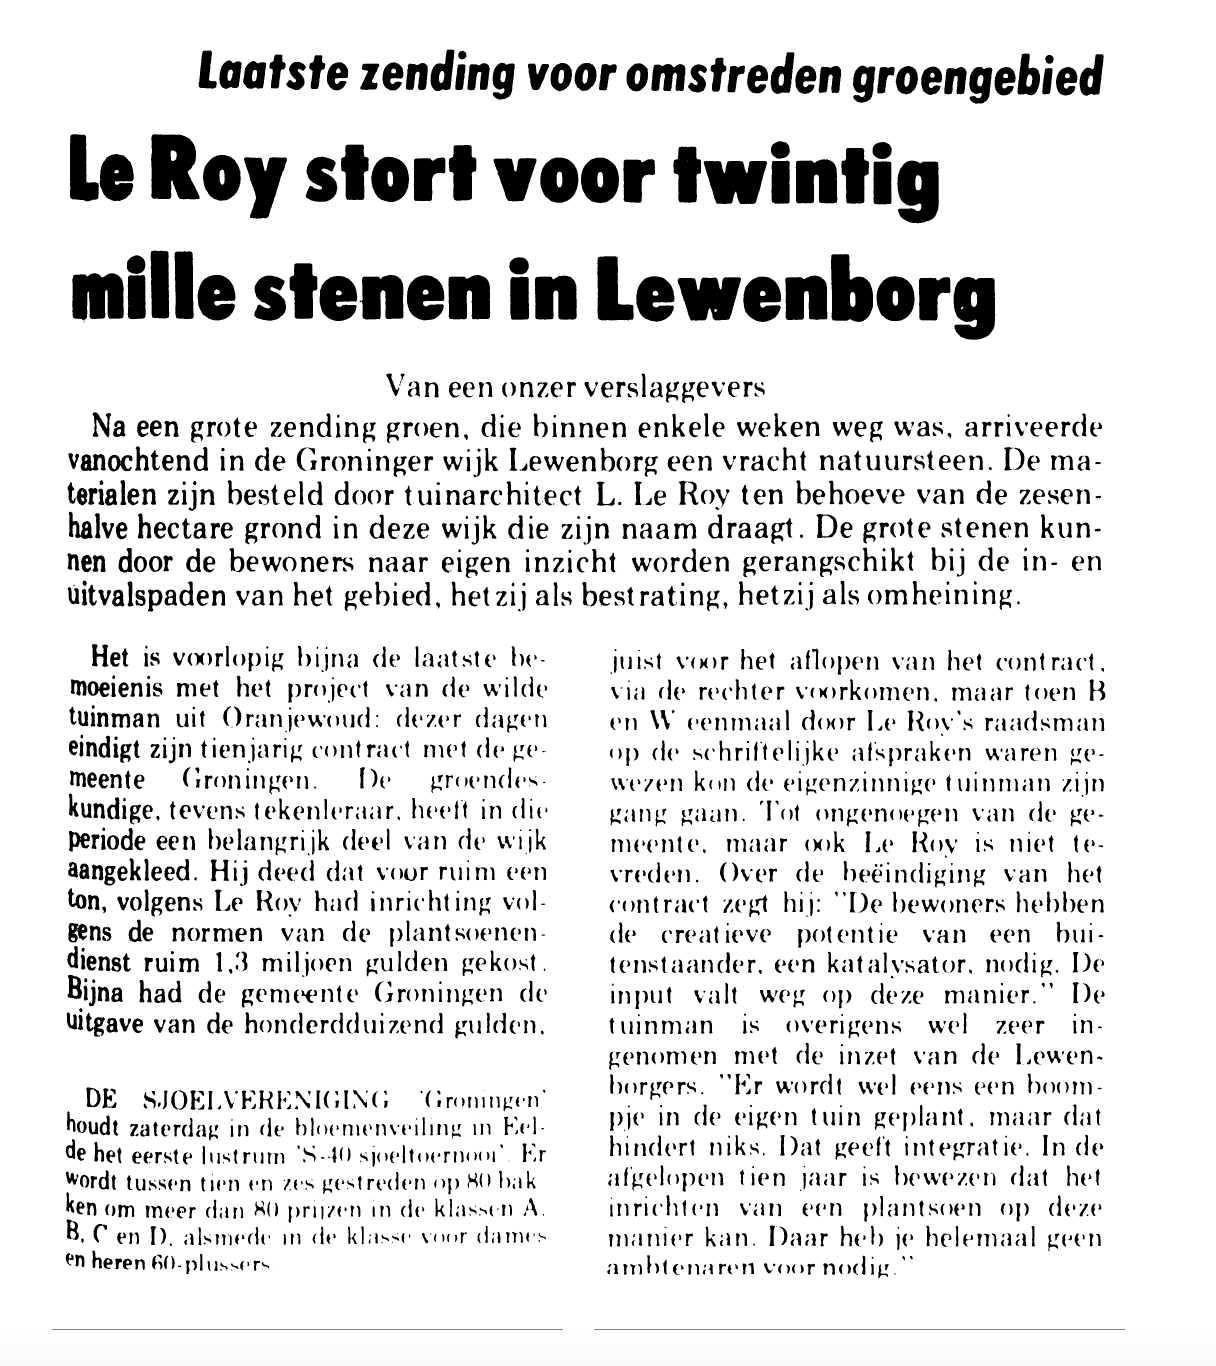 19830315_Le_Roy_stort_voor_twintig_mille_stenen_in_Lewenborg.png